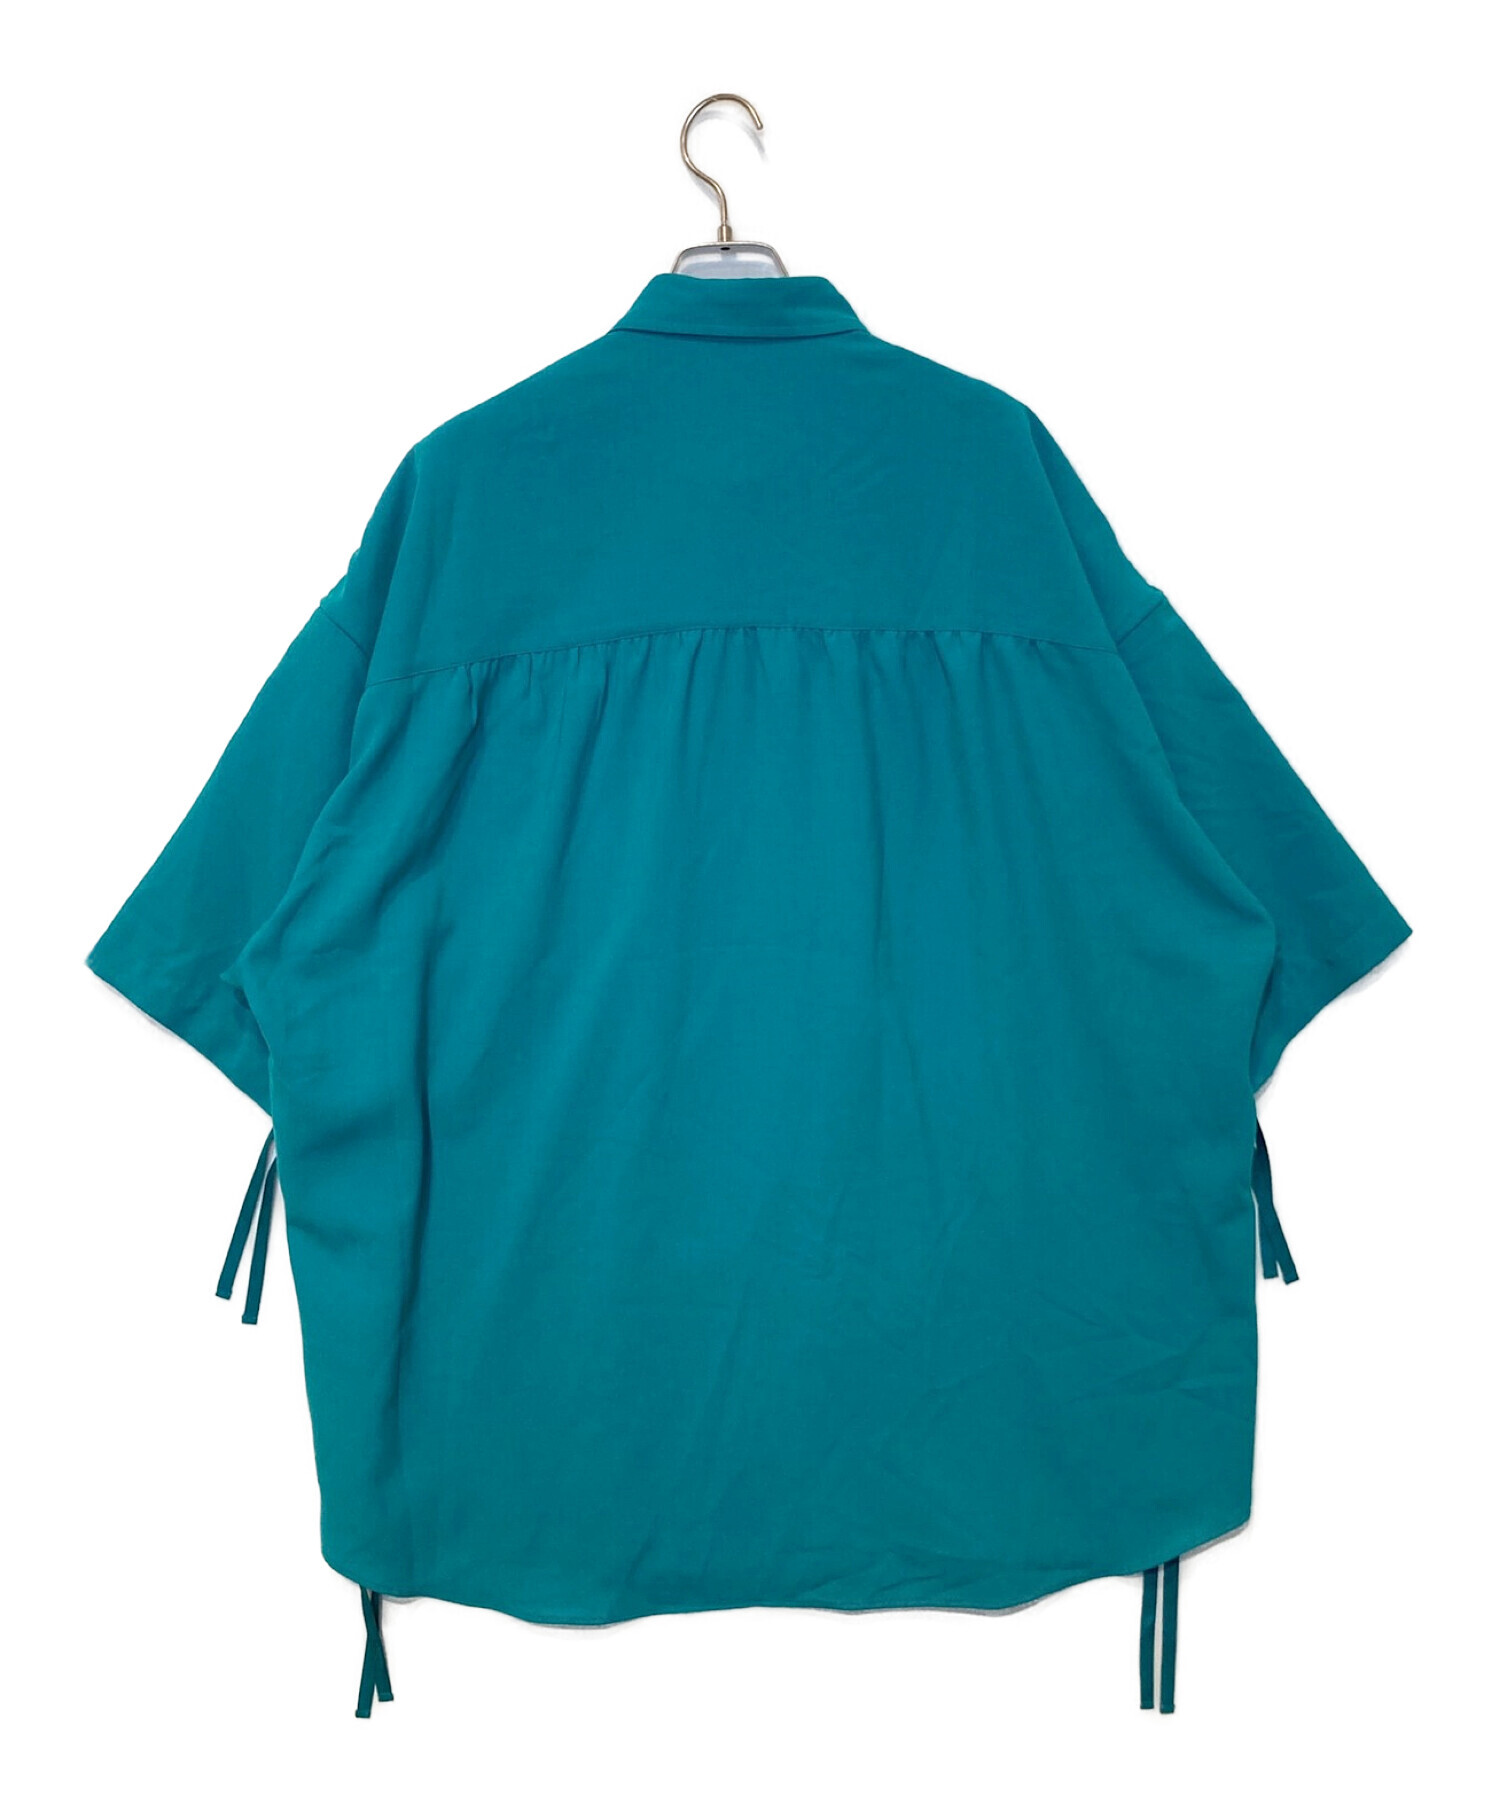 MAISON SPECIAL (メゾンスペシャル) プライムオーバーセミダブルシャーリングショートスリーブシャツ ブルー サイズ:1